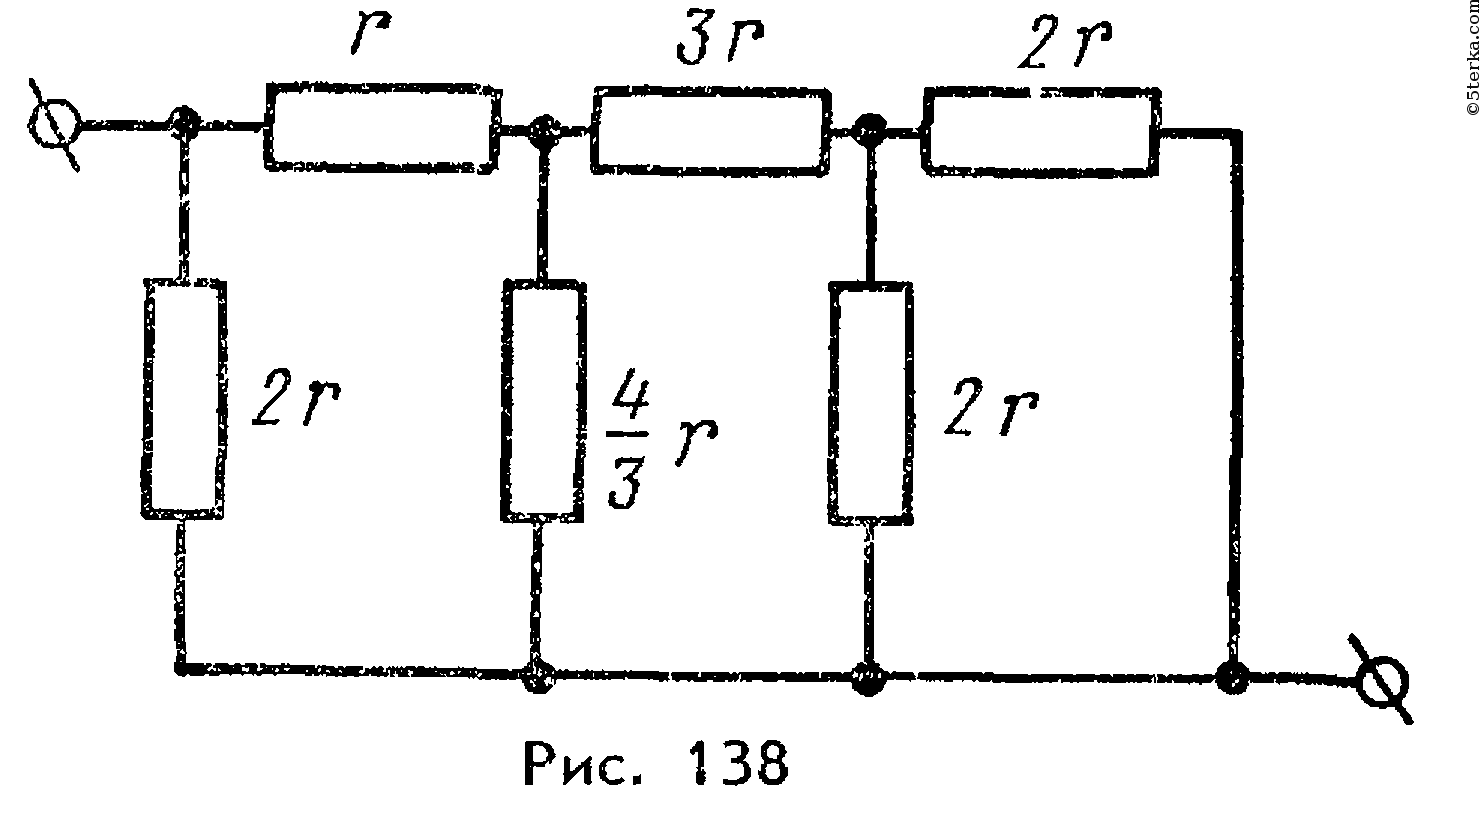 В цепи изображенной на рисунке идеальный амперметр показывает 1 а